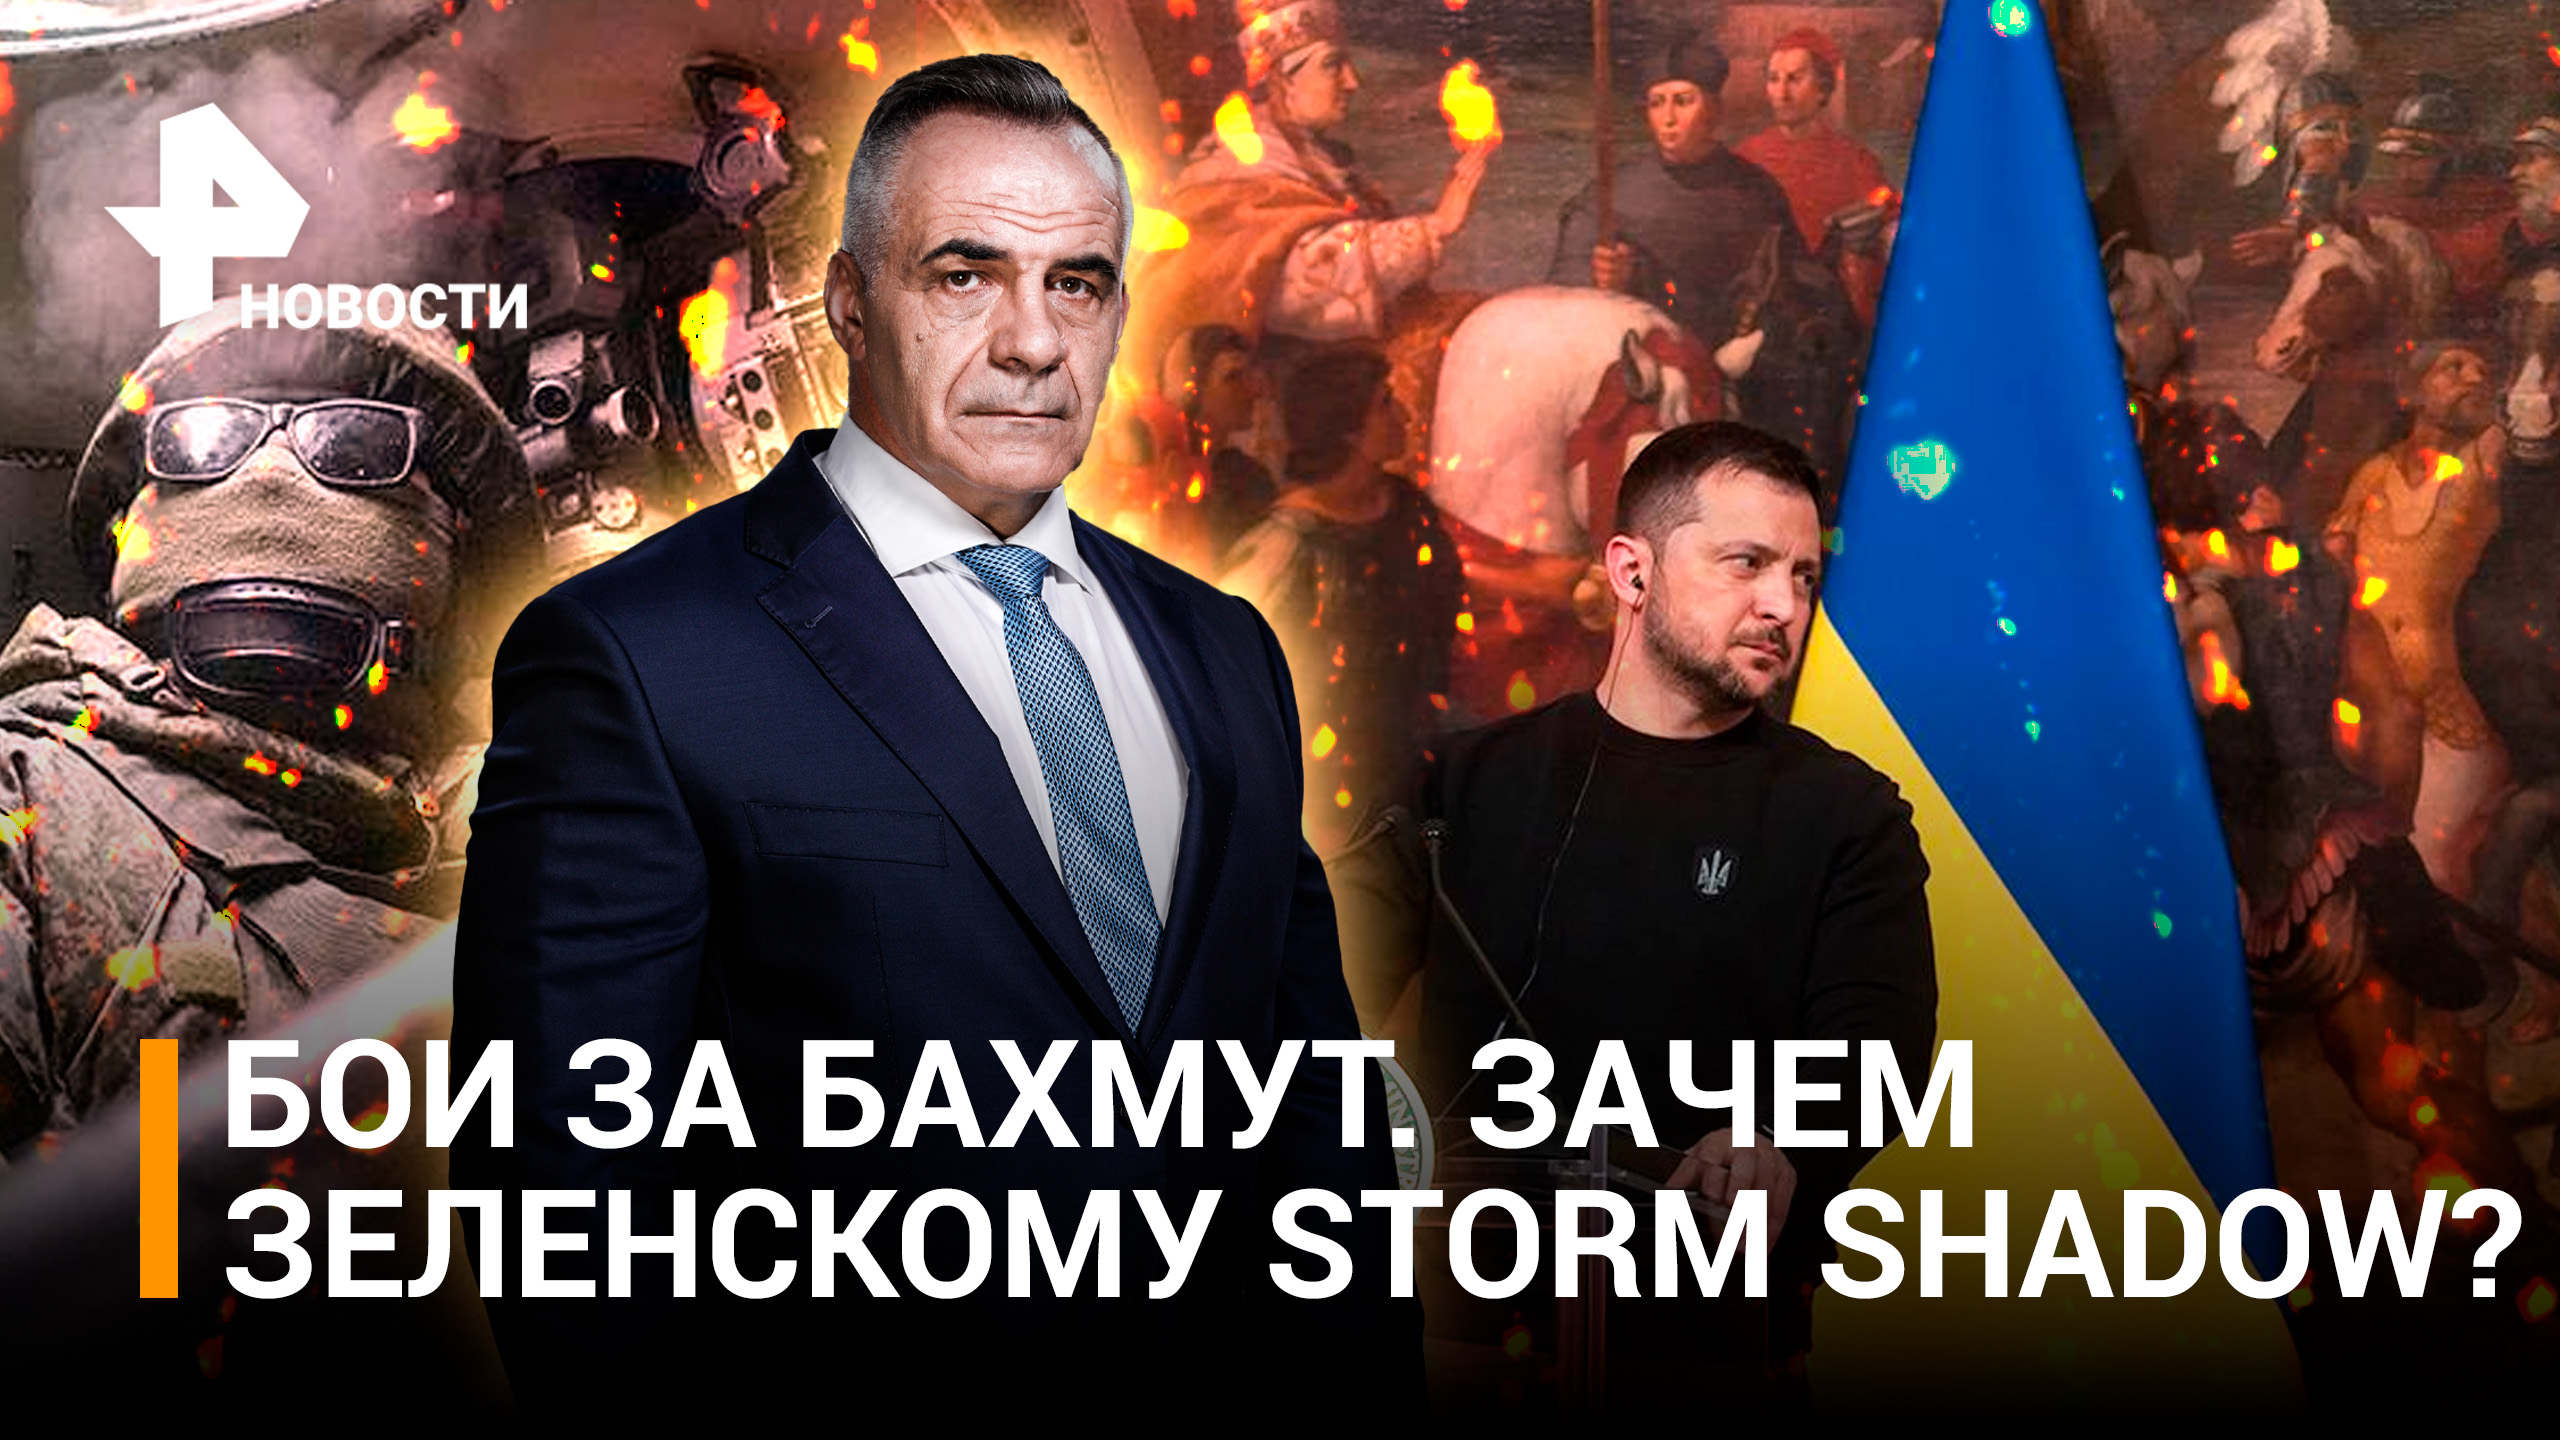 Зачем Зеленскому опасная игрушка Storm Shadow? ЕС запретил отмечать Победу / Итоги недели с Марченко